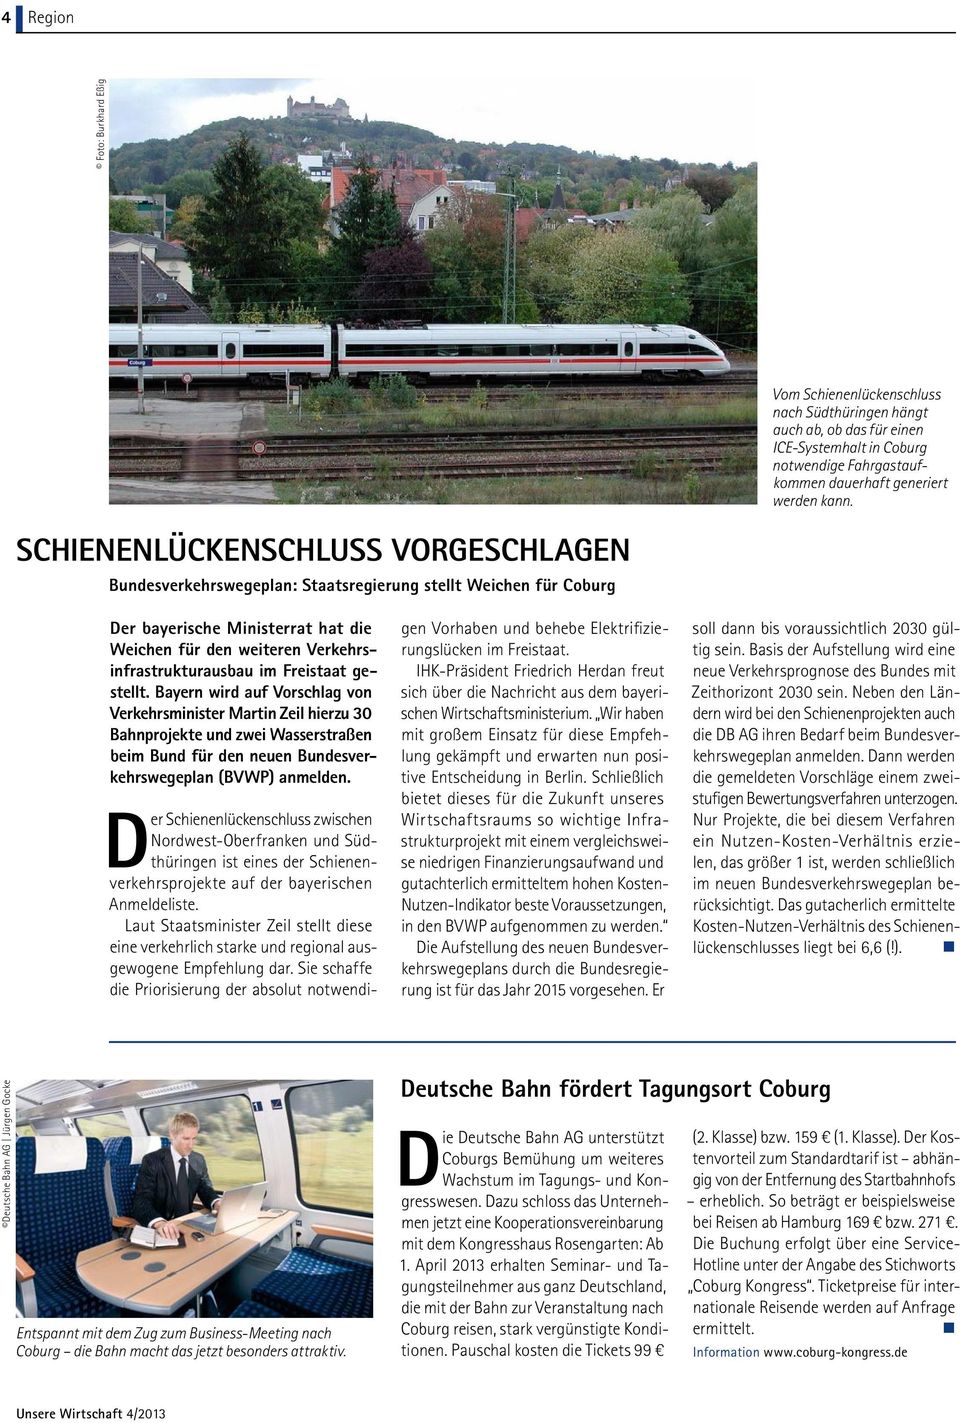 Freistaat gestellt. Bayern wird auf Vorschlag von Verkehrsminister Martin Zeil hierzu 30 Bahnprojekte und zwei Wasserstraßen beim Bund für den neuen Bundesverkehrswegeplan (BVWP) anmelden.